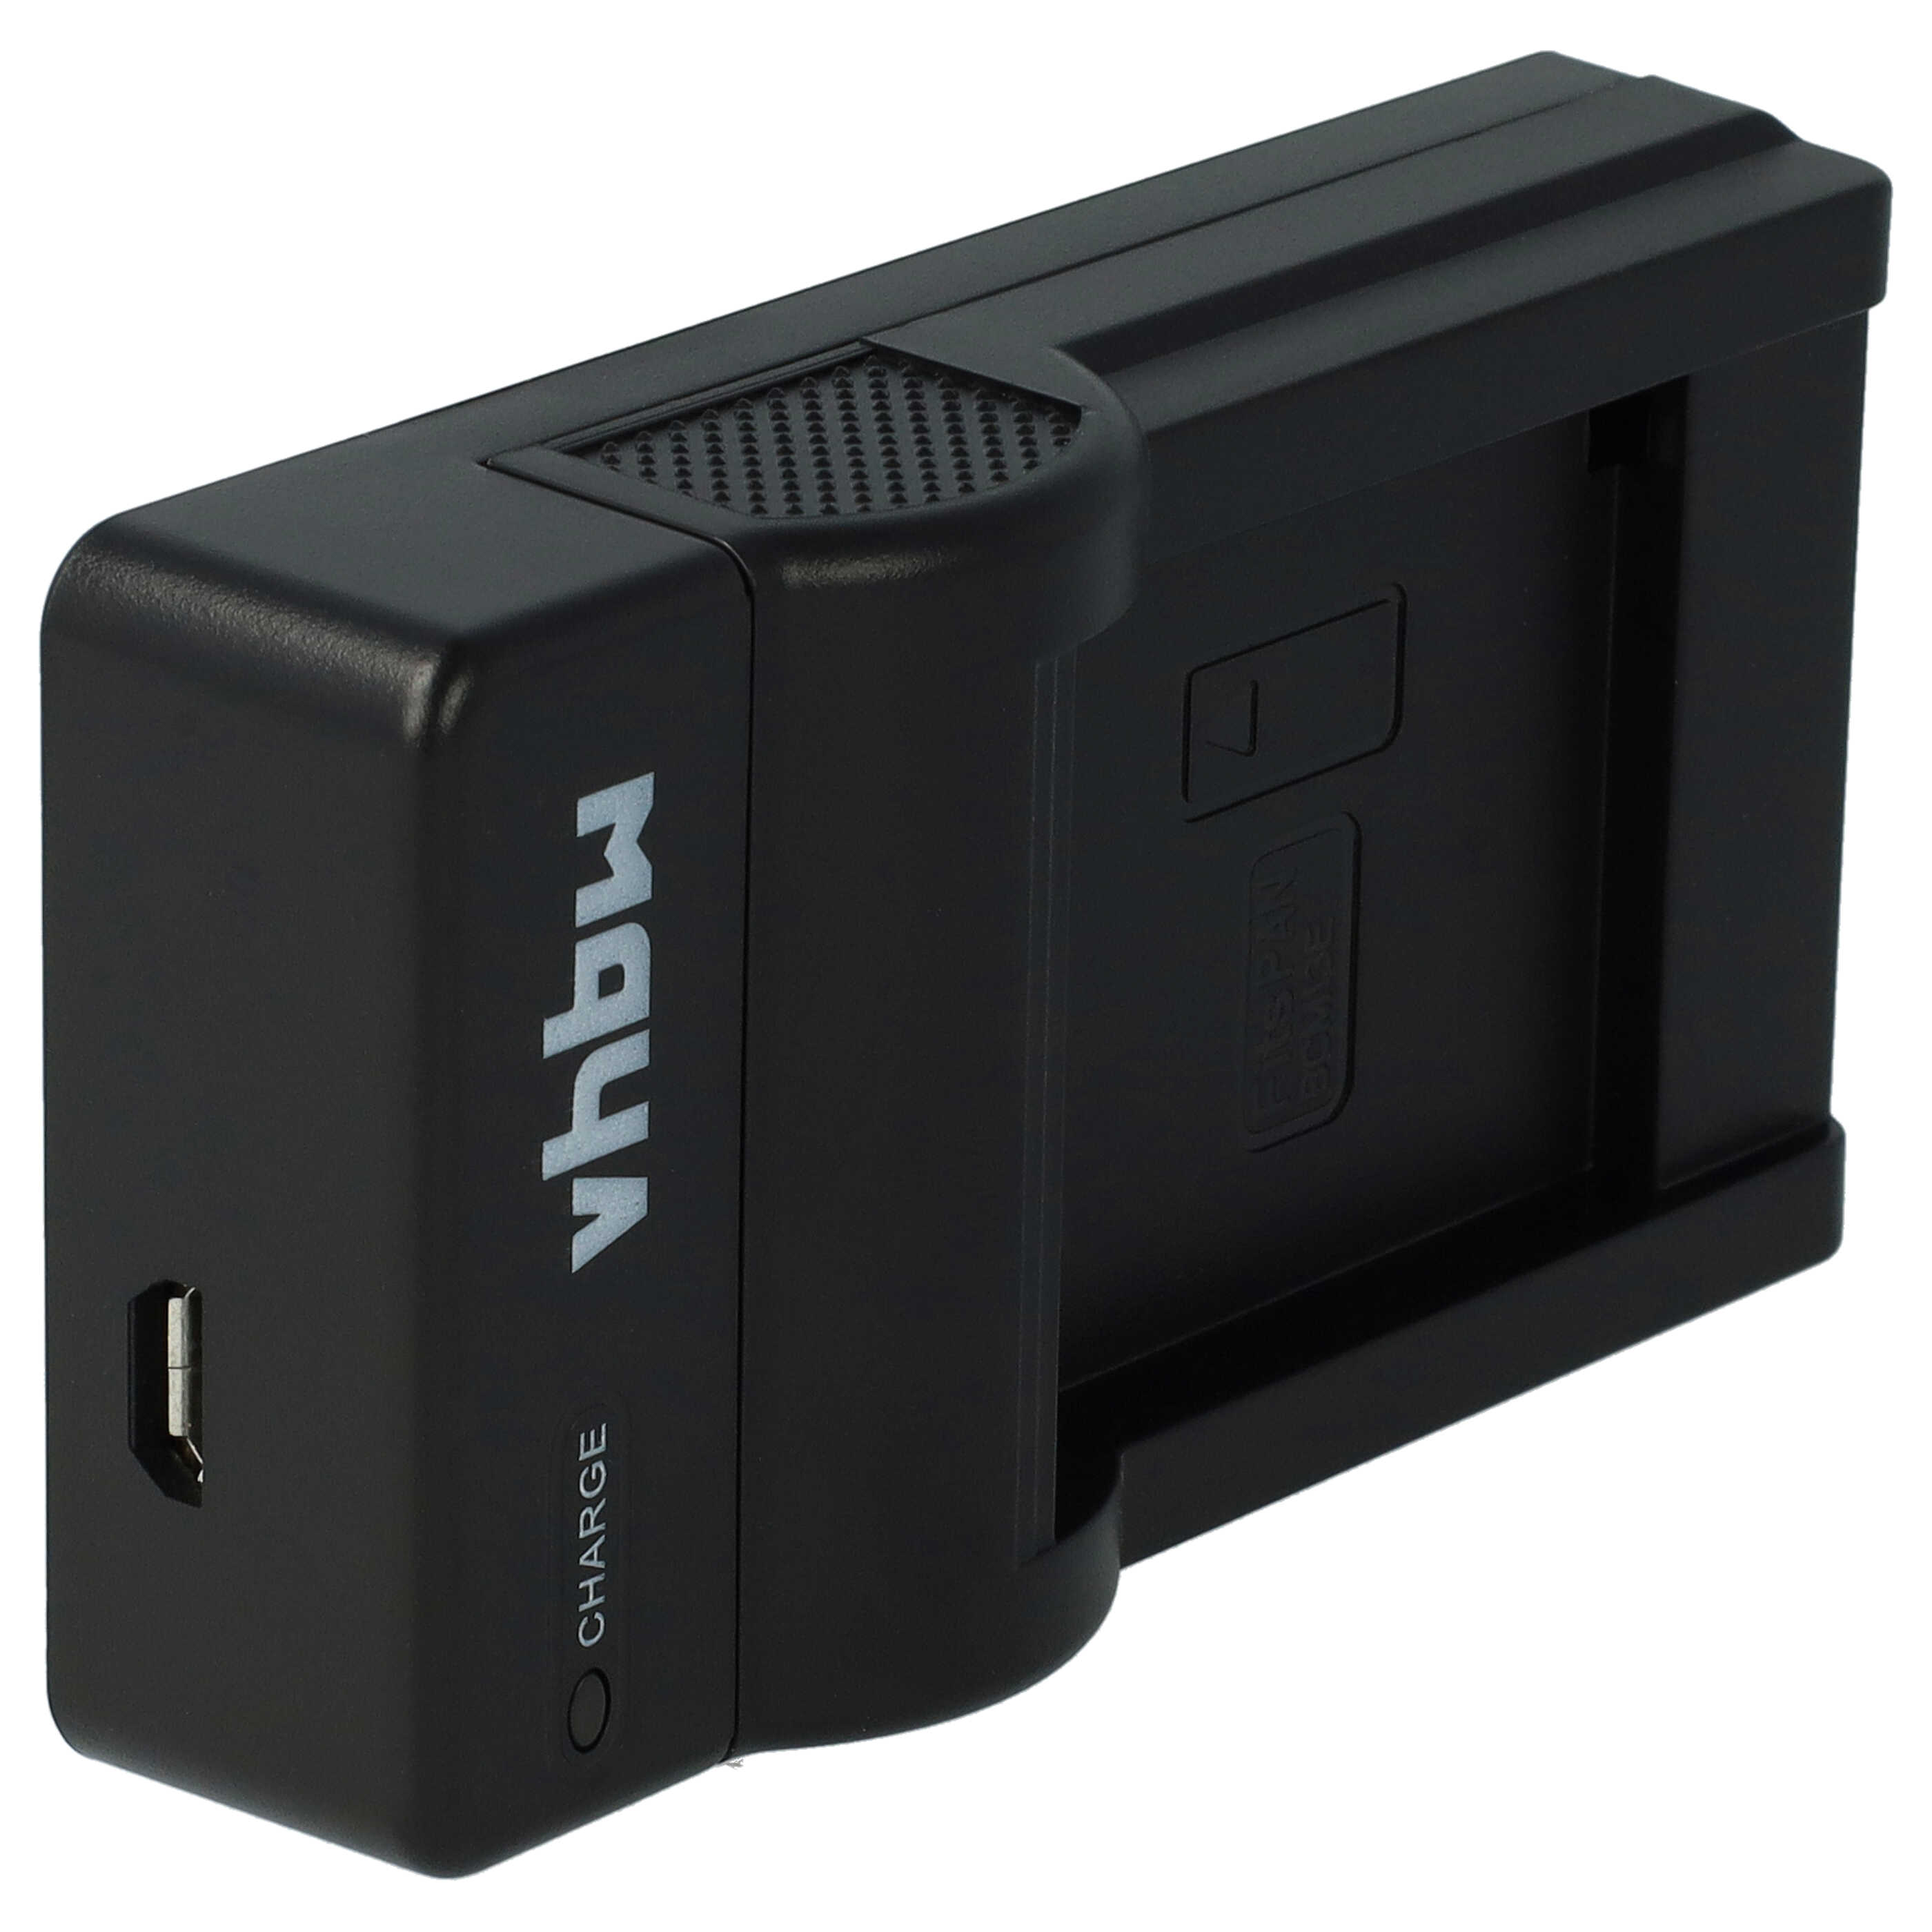 Akku Ladegerät passend für Lumix DMC-FT7 Kamera u.a. - 0,5 A, 4,2 V